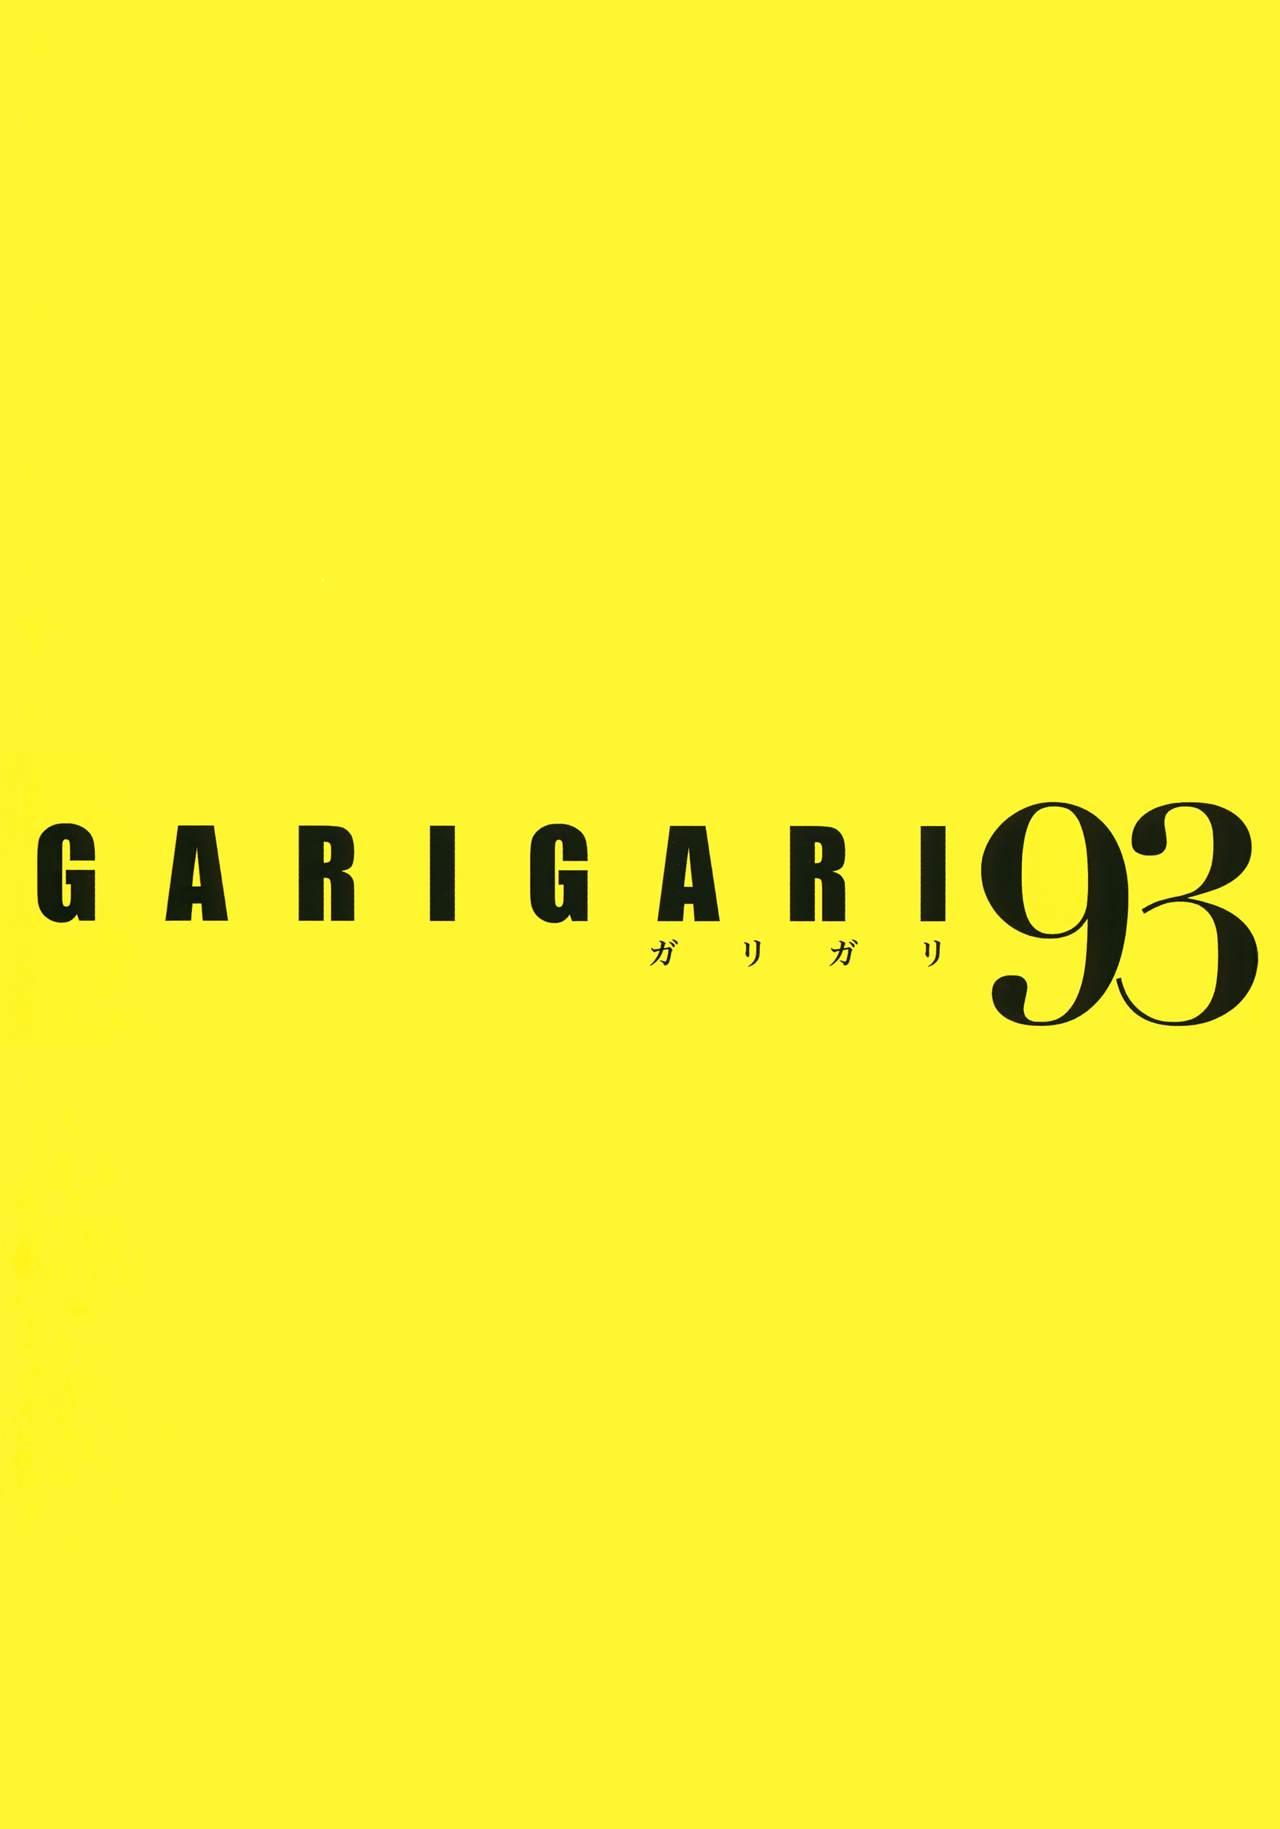 GARIGARI 93 1